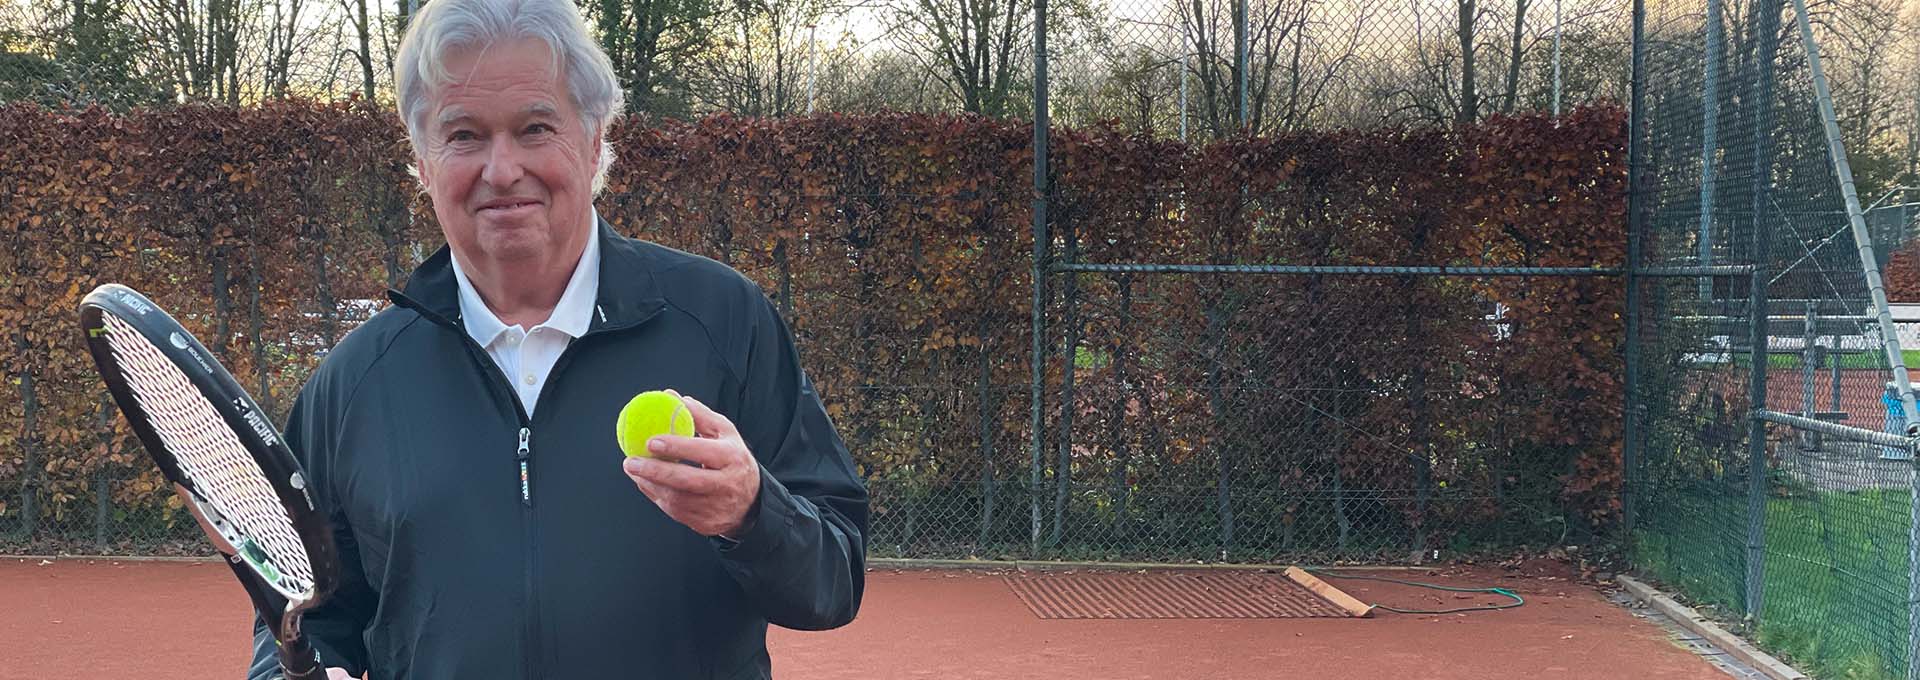 Bernafon Alpha hoortoesteldrager (man) met een tennisracket en bal in de hand op een tennisbaan, klaar om te spelen